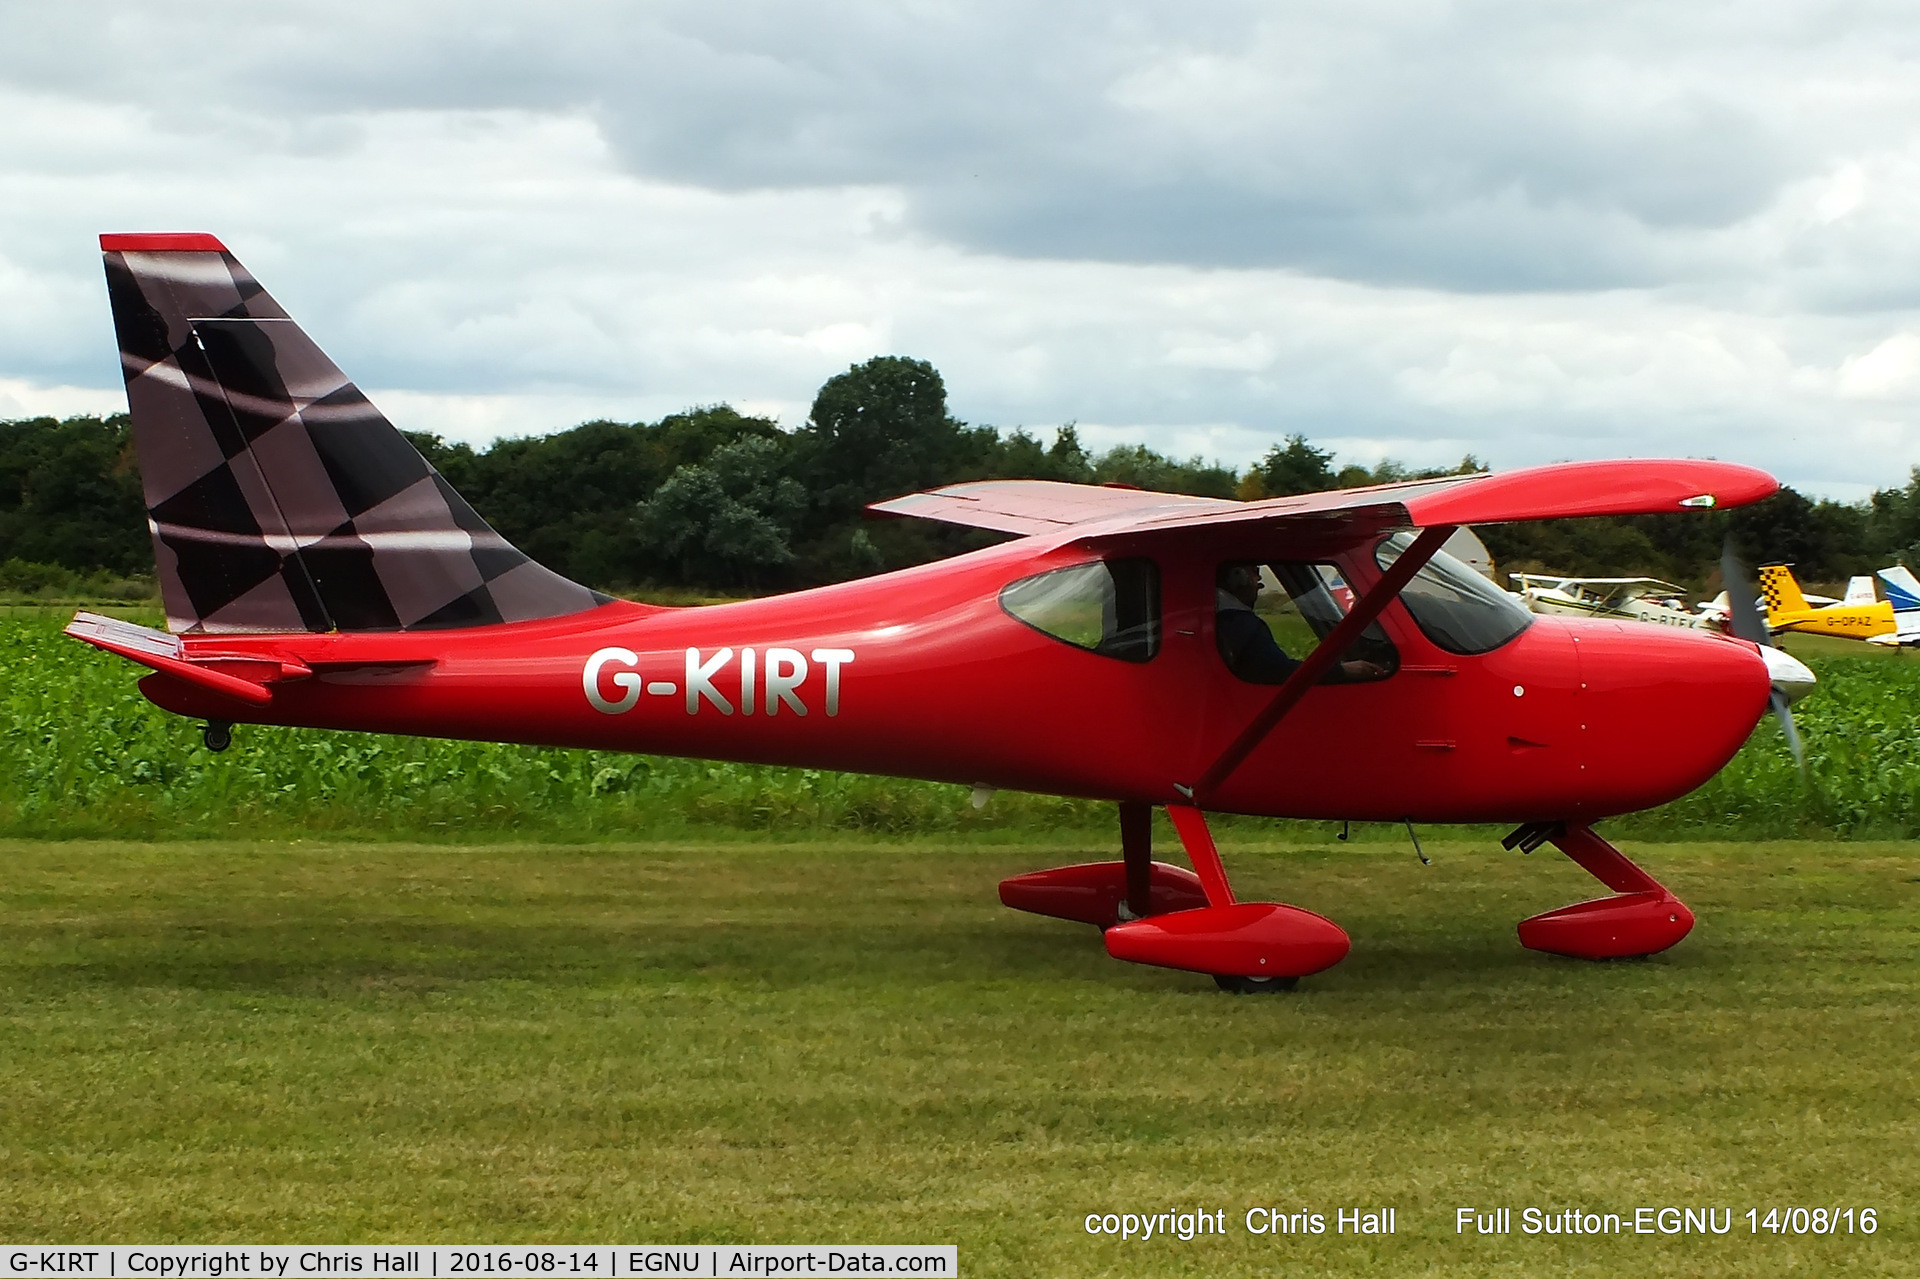 G-KIRT, 2013 Glasair GlaStar C/N LAA 295-15189, at the LAA Vale of York Strut fly-in, Full Sutton